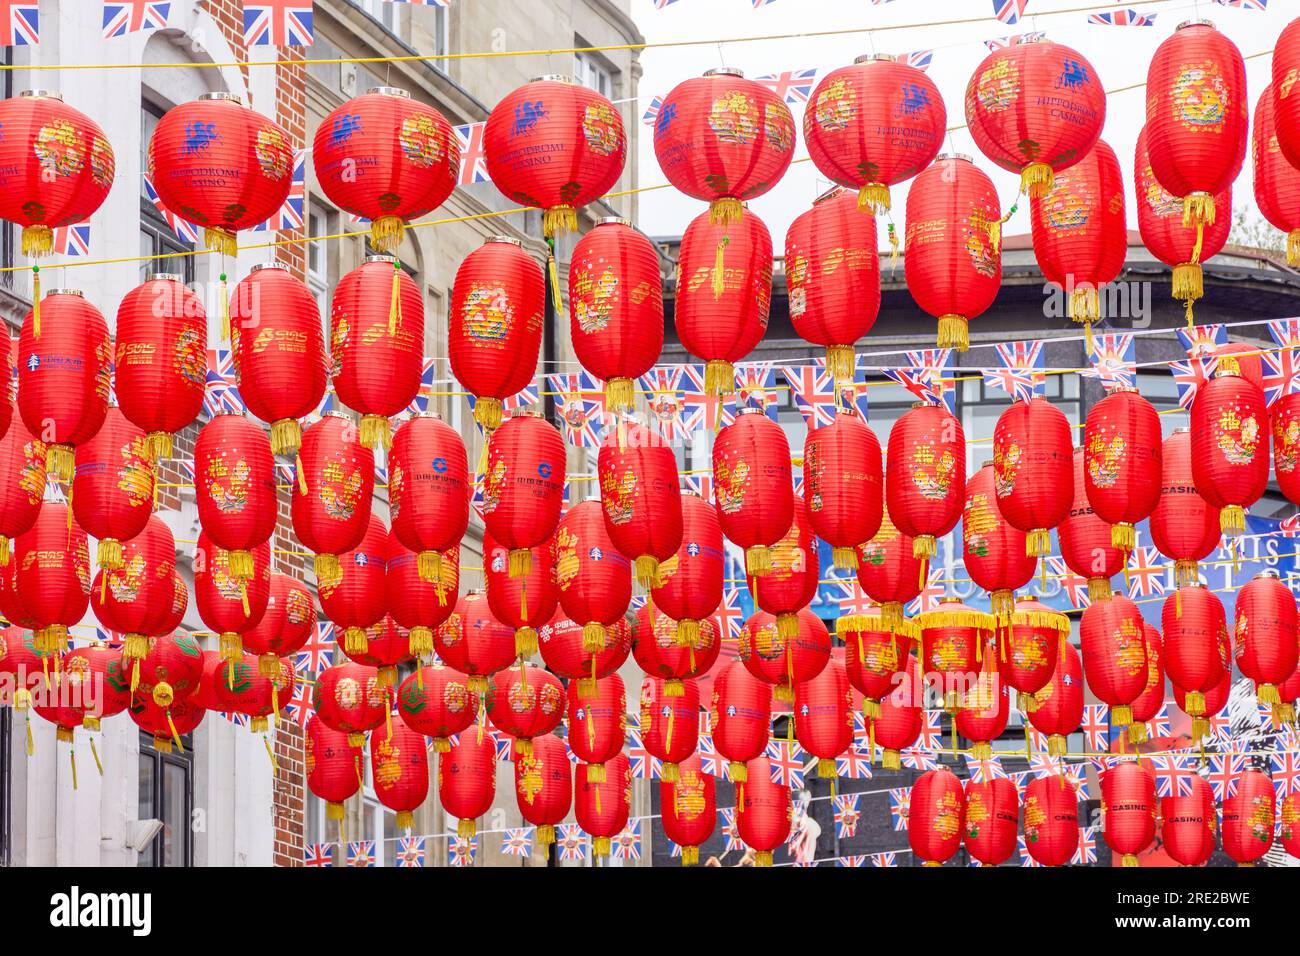 Lanternes chinoises dans Chinatown, Wardour Street, Cité de Westminster, Grand Londres, Angleterre, Royaume-Uni Banque D'Images